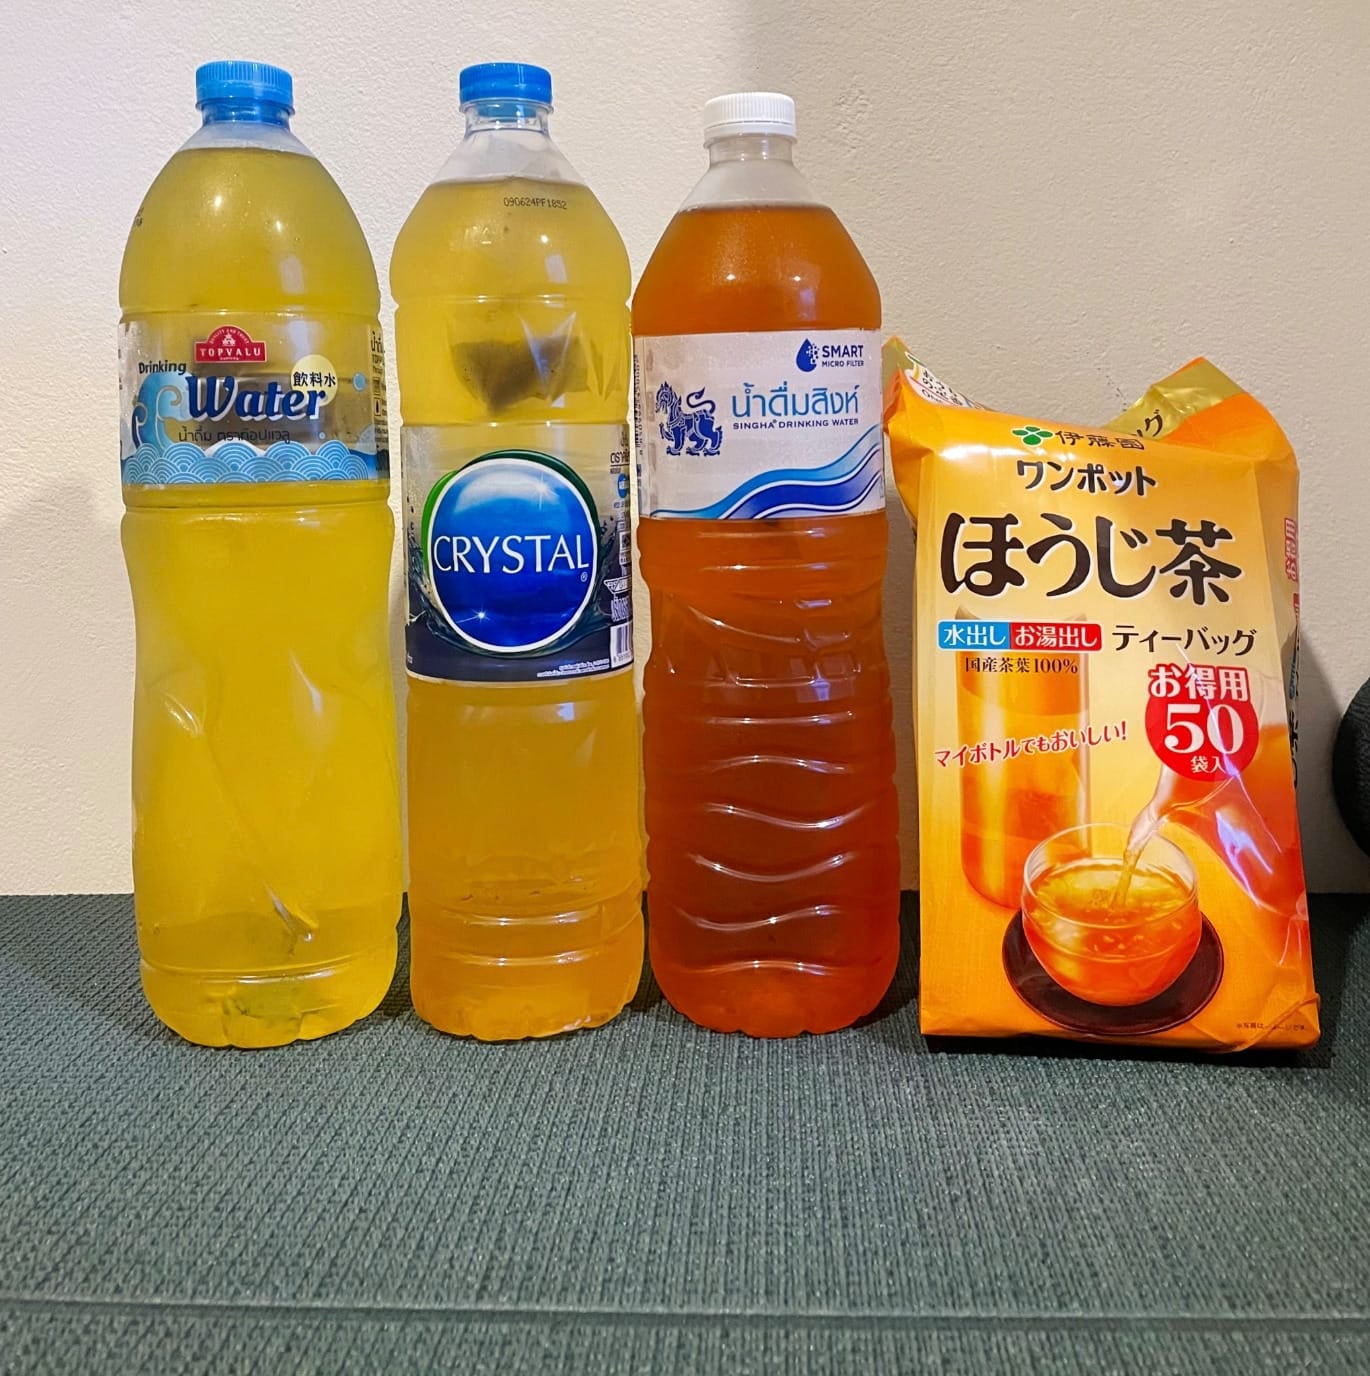 คนญี่ปุ่นลองชงชาด้วยน้ำดื่มไทย